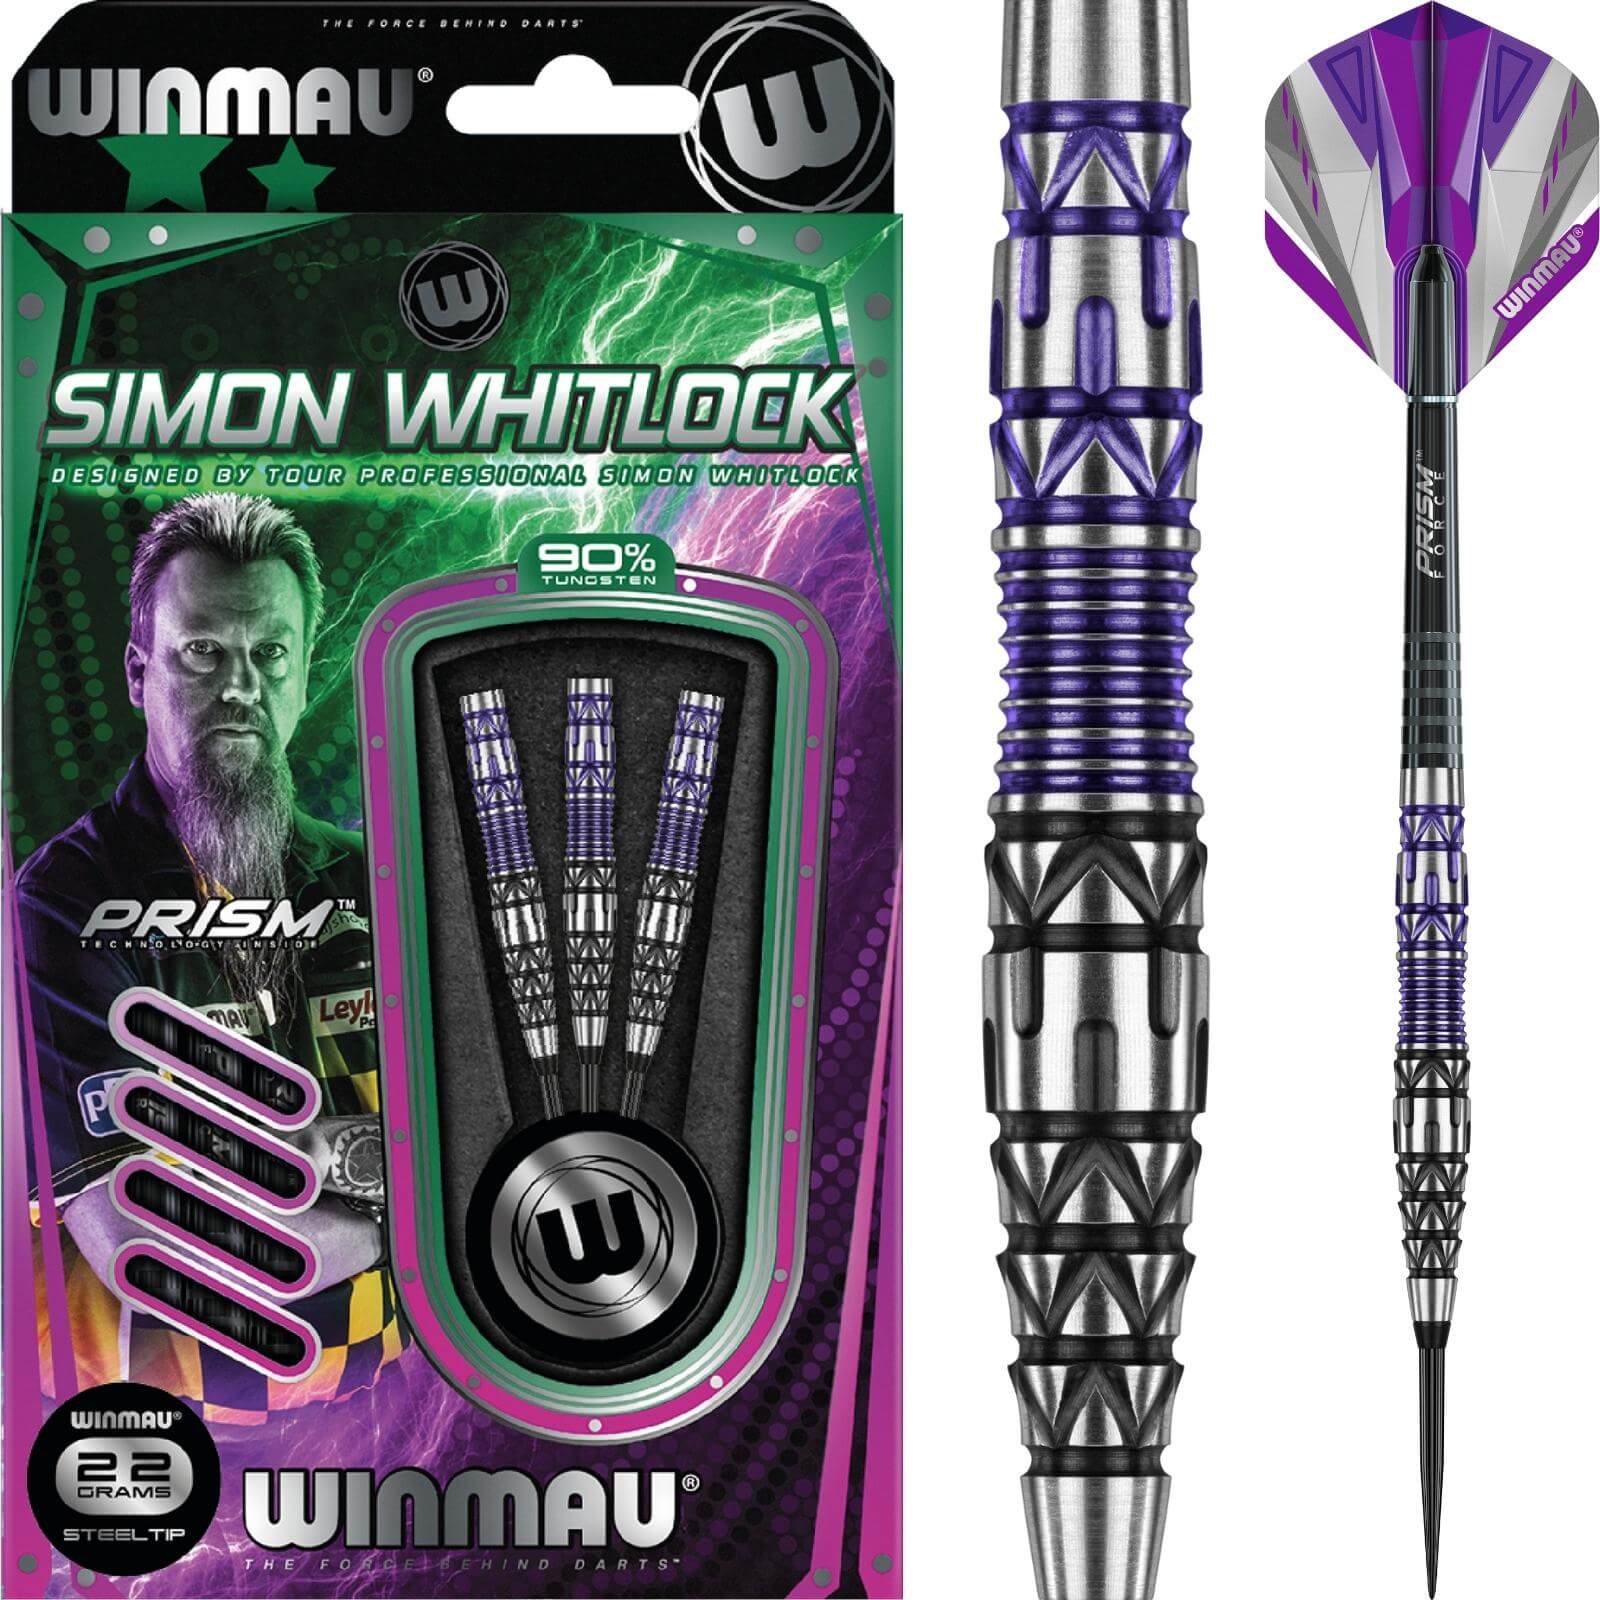 Darts - Winmau - Simon Whitlock Special Edition Darts - Steel Tip - 90% Tungsten - 22g 24g 